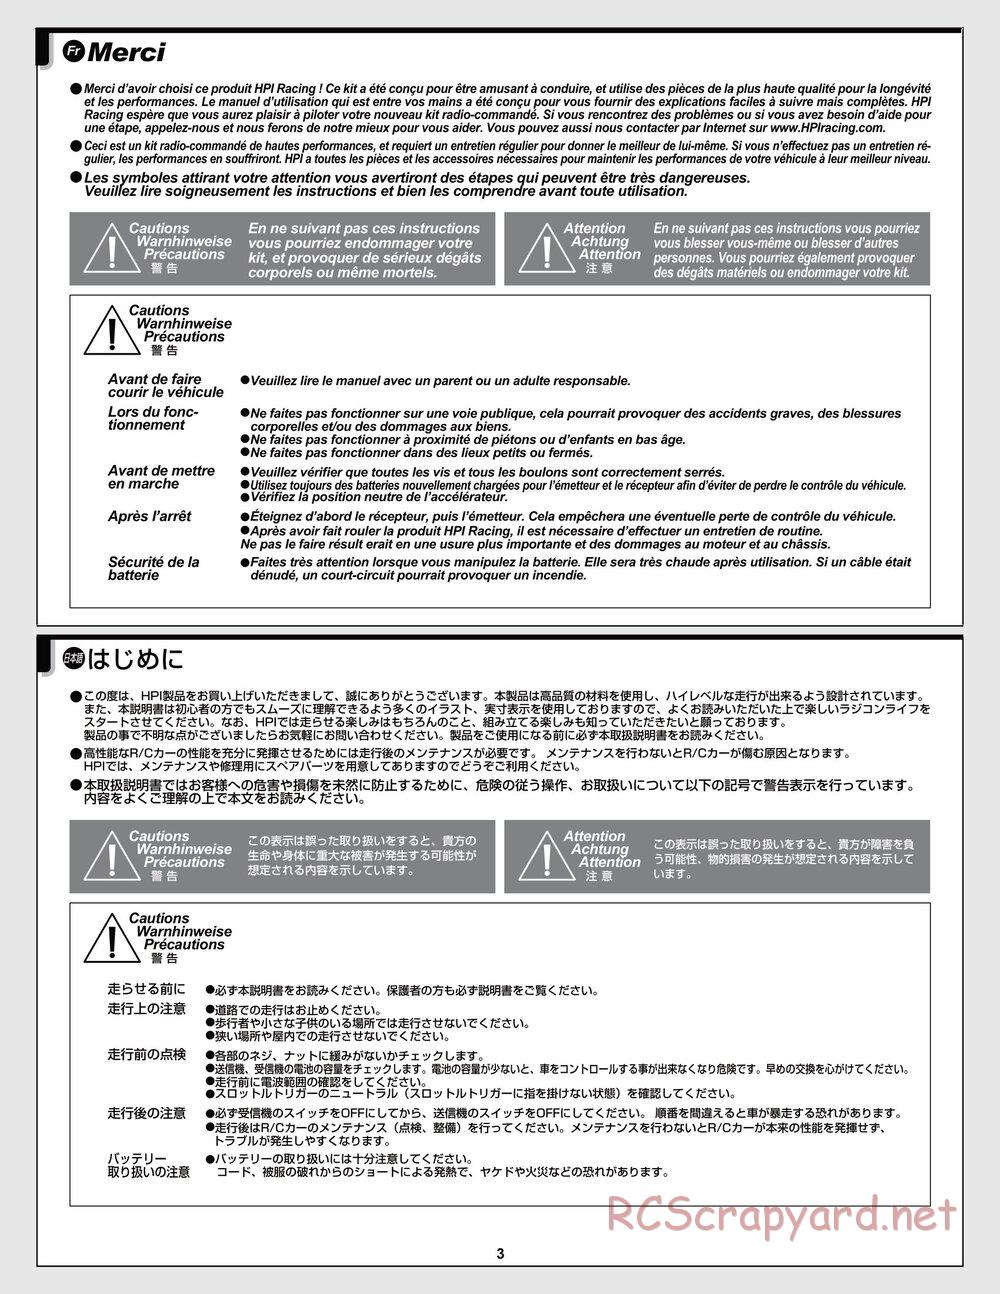 HPI - Jumpshot SC / ST V2 - Manual - Page 3